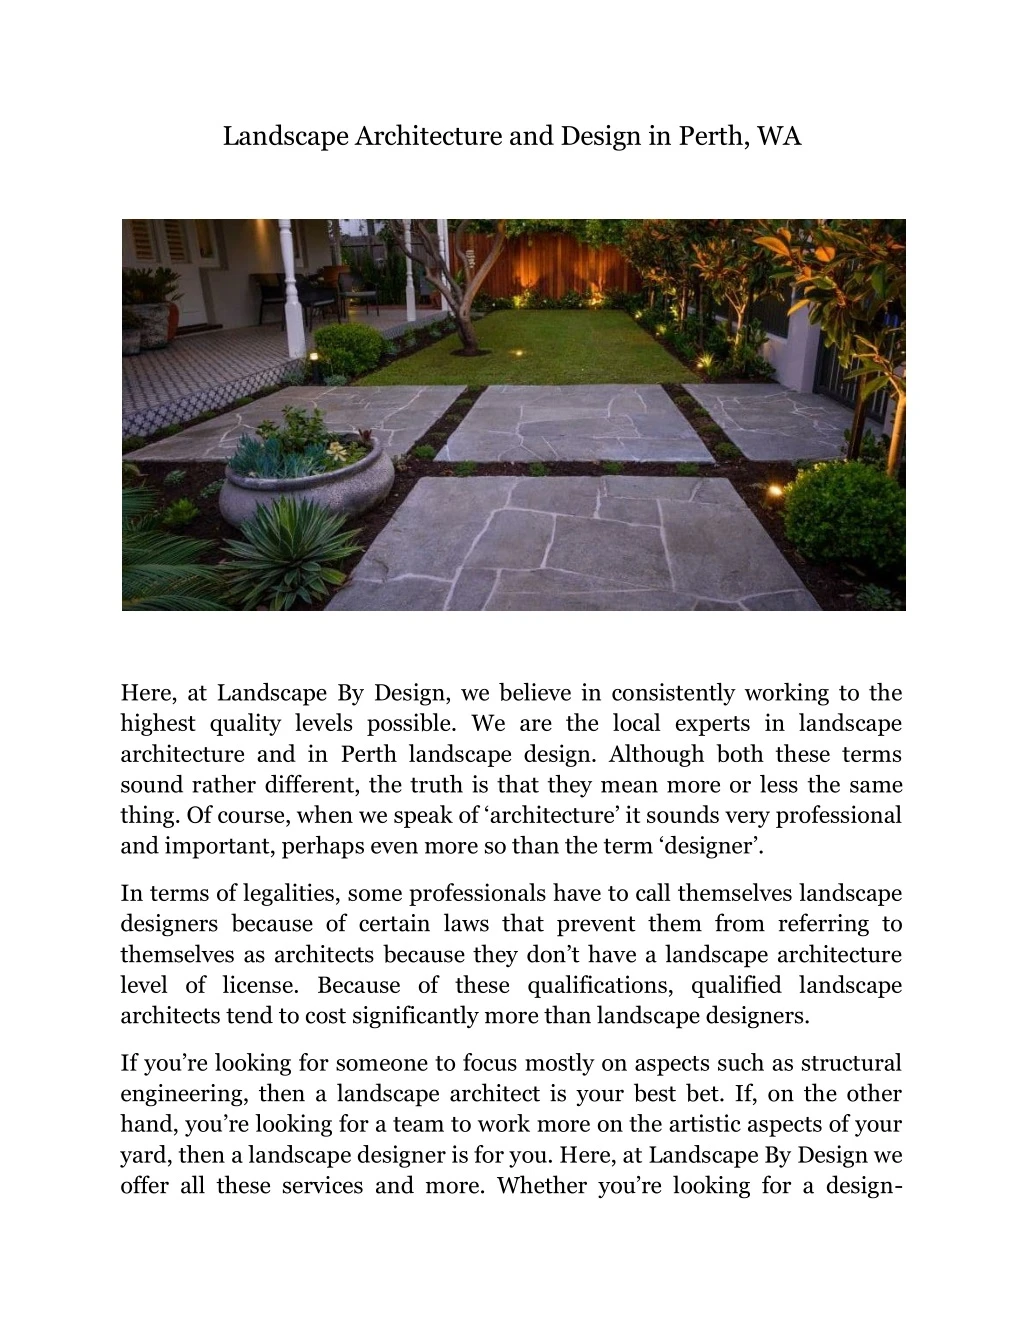 landscape architecture and design in perth wa